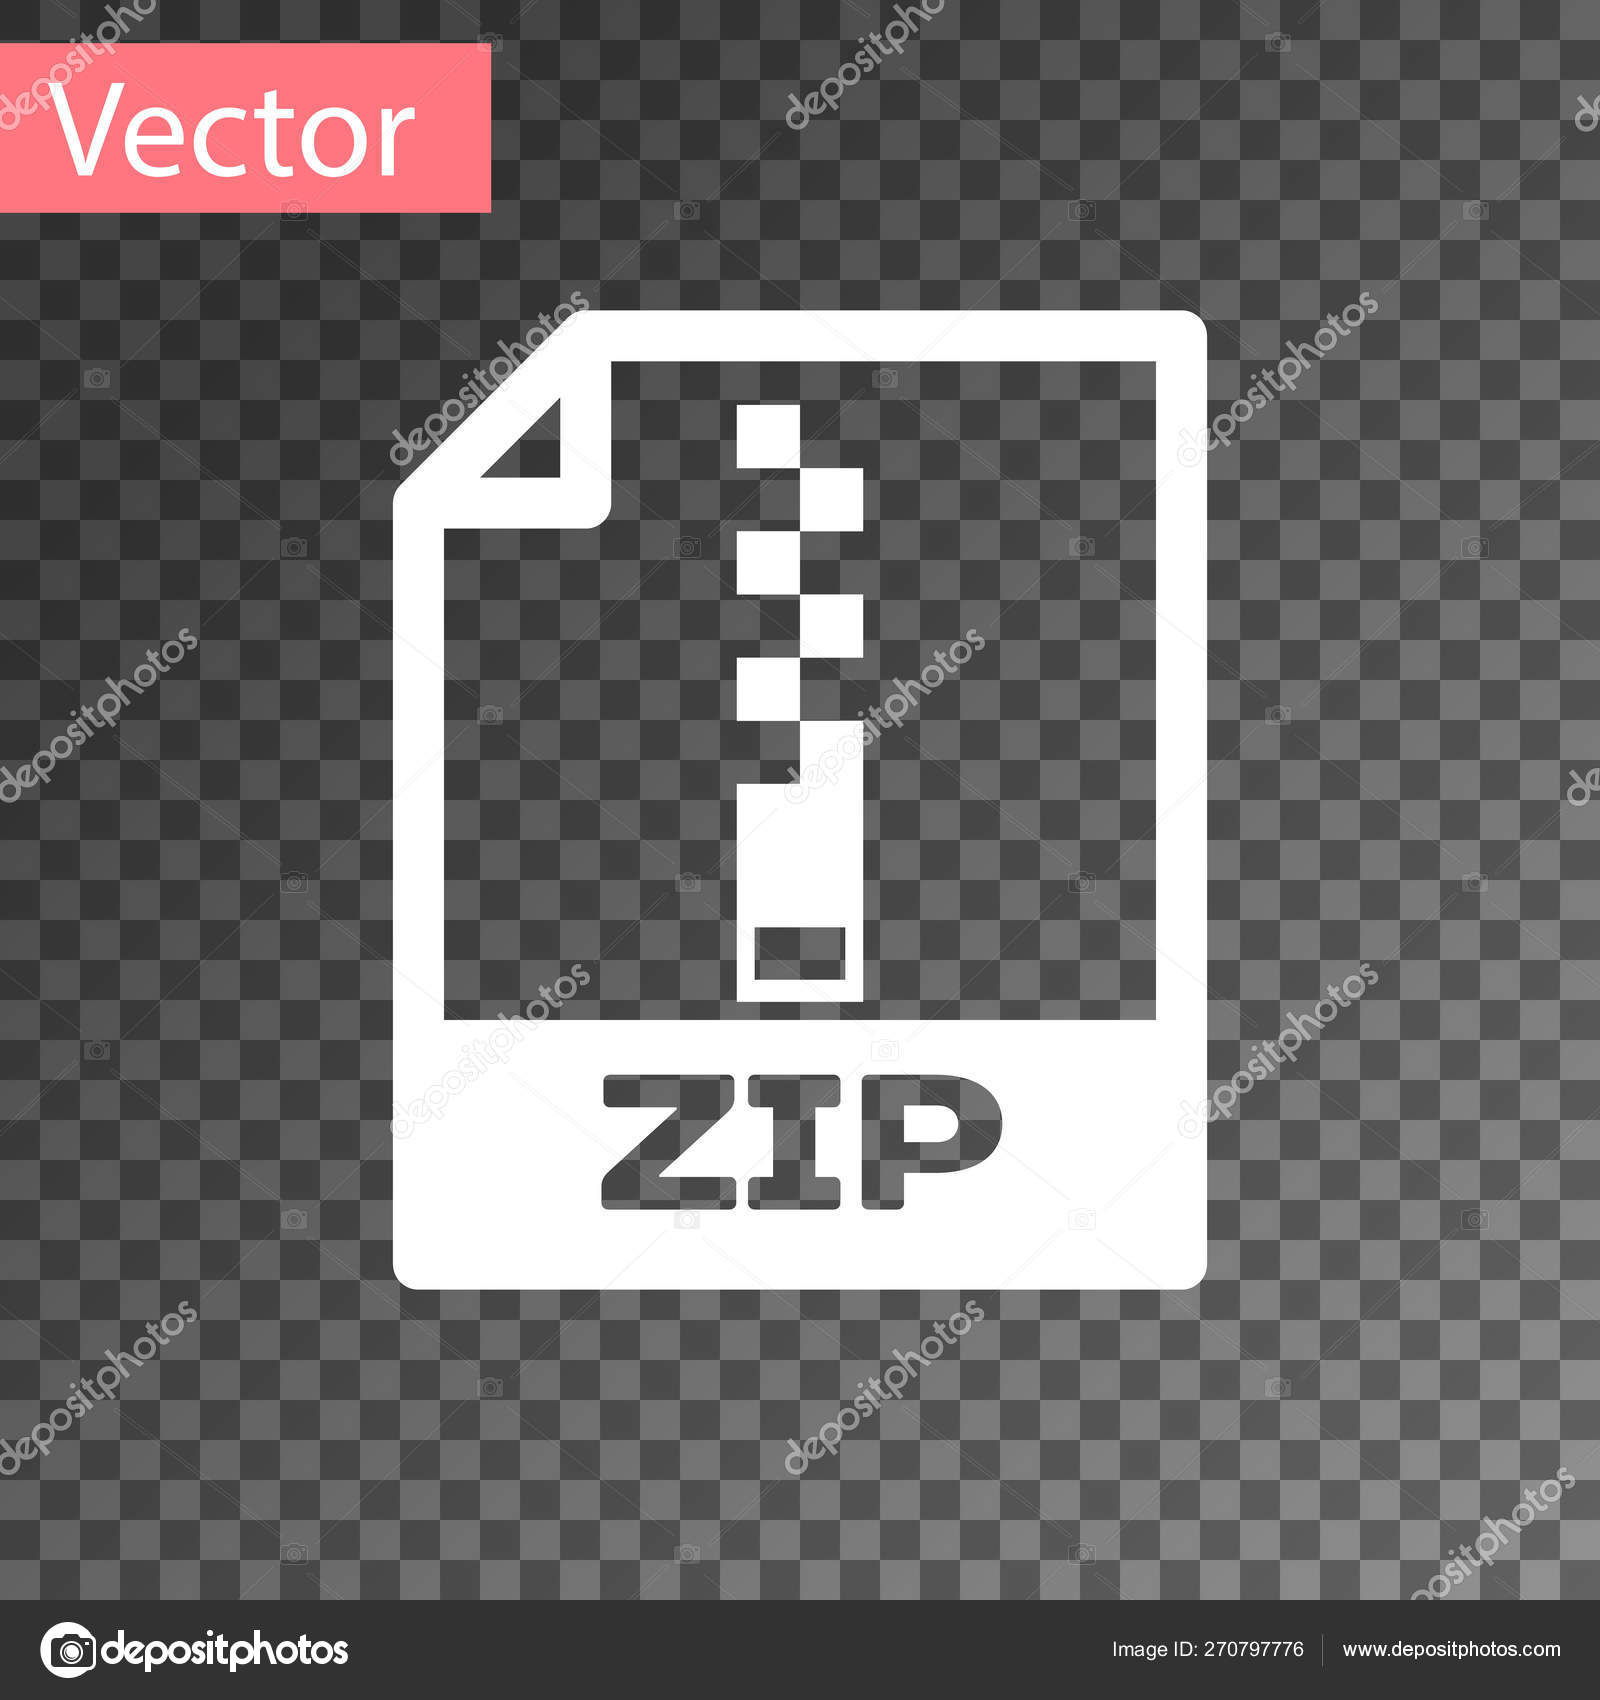 Unduh 500 Koleksi Background Zip File Download Gratis Terbaik